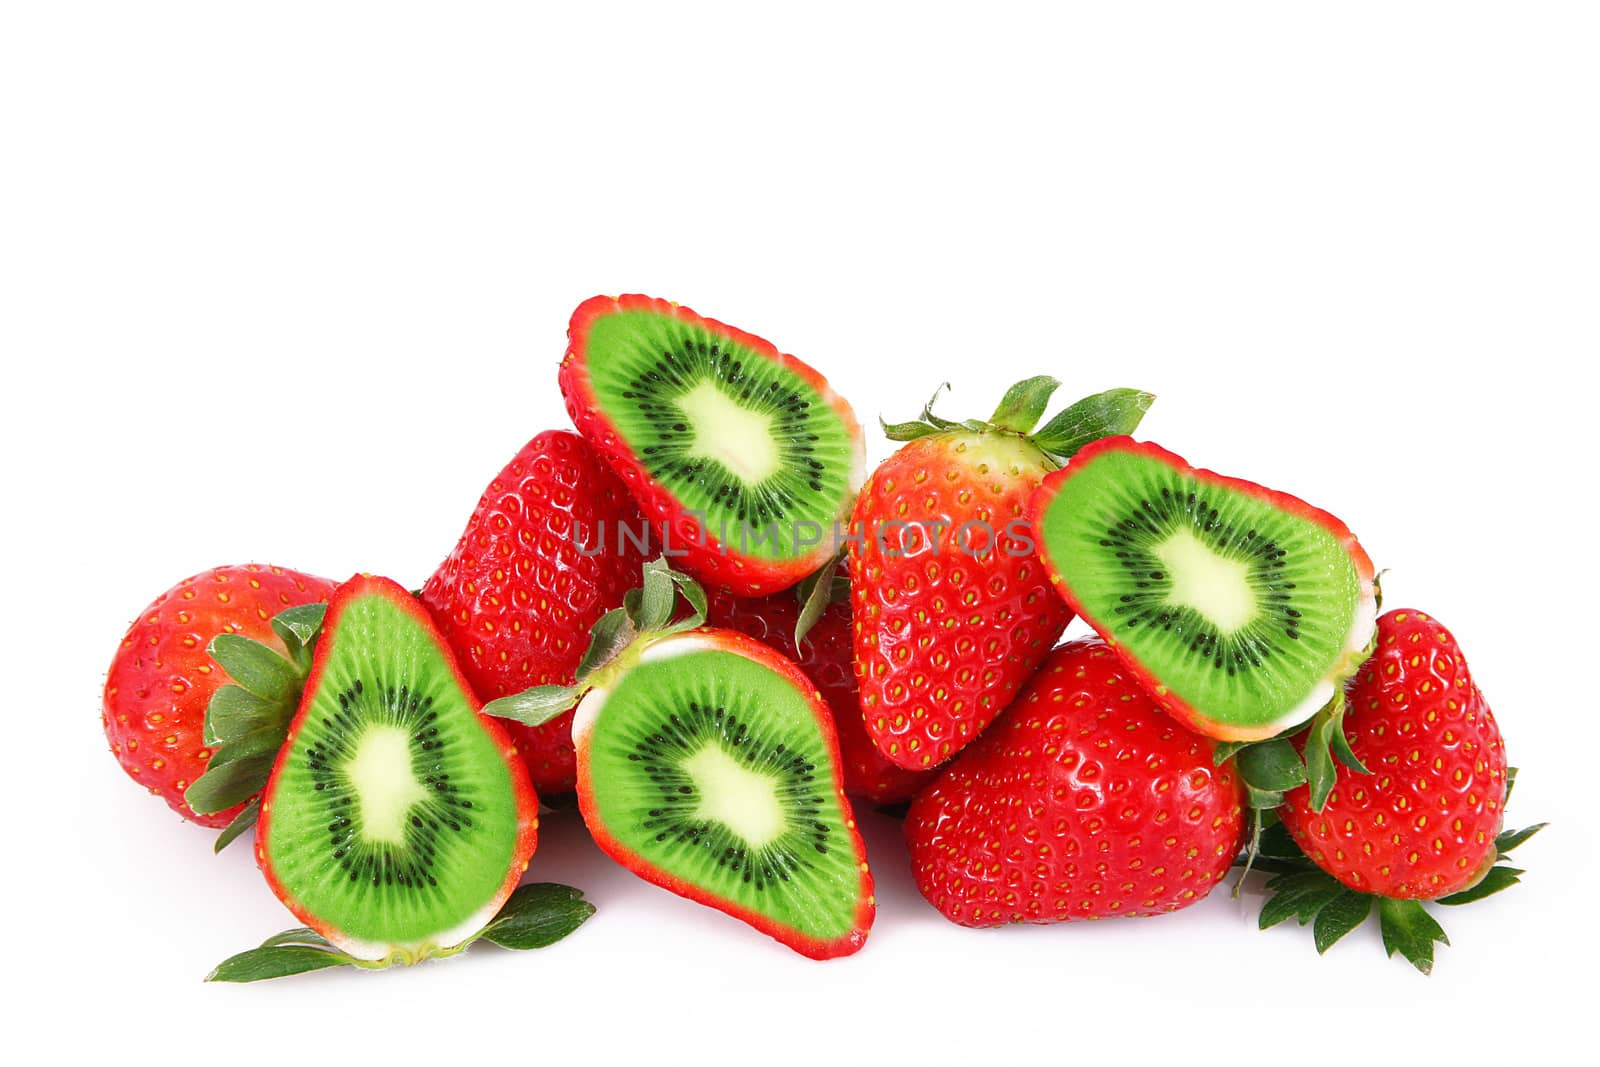 strange ibrid fruit strawberry-kiwi